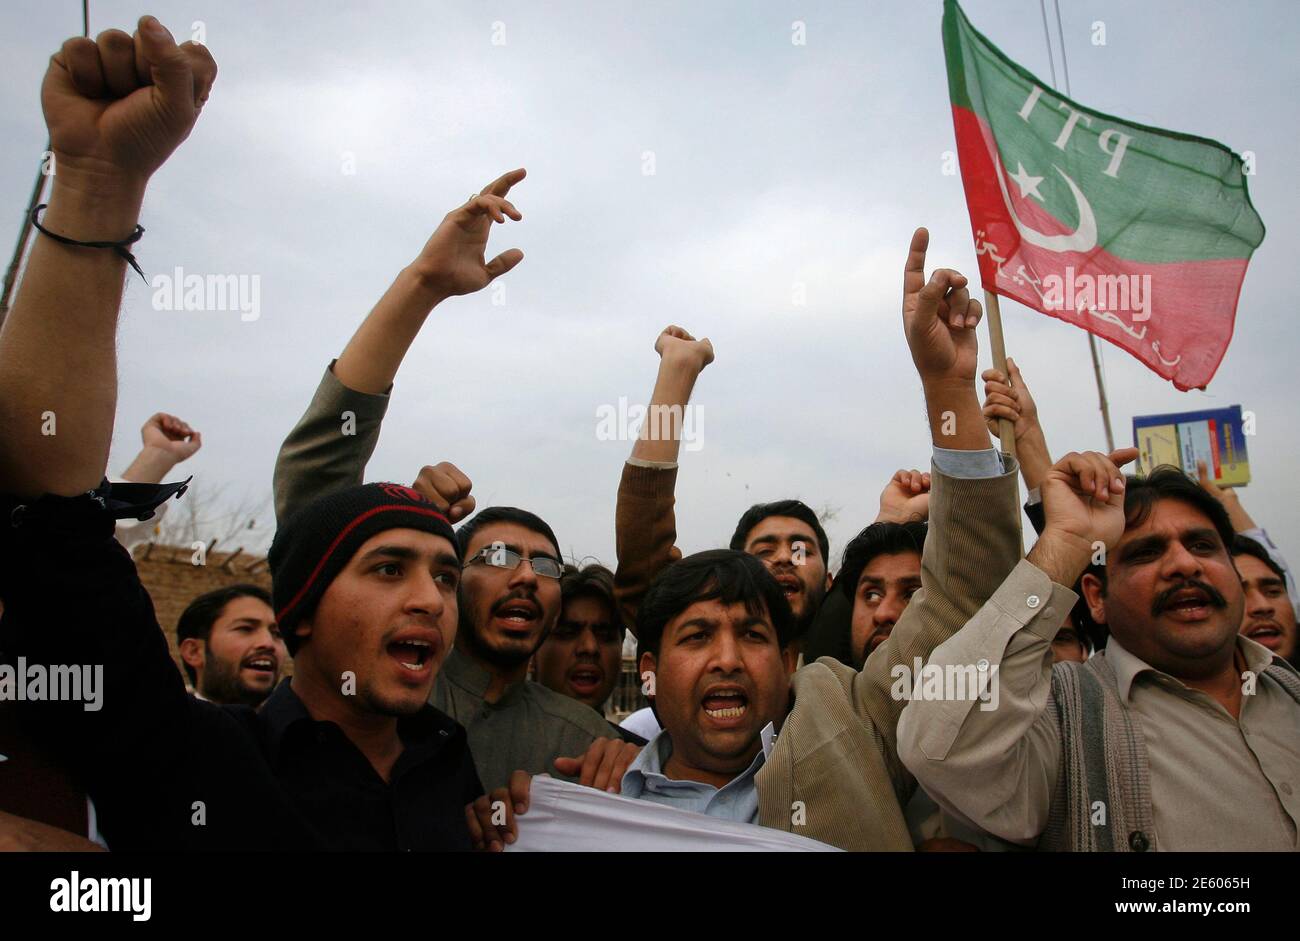 Les partisans du Pakistan Tehreek-i-Insaf (mouvement pakistanais pour la justice) criaient des slogans anti-américains lors d'un rassemblement à Peshawar le 2 mars 2012. Environ 50 manifestants se sont rassemblés pour condamner l'incendie de copies du Coran en février 21 à la base principale de l'OTAN en Afghanistan. REUTERS/Khuram Parvez (PAKISTAN - Tags: POLITIQUE TROUBLES CIVILS DROIT DE LA CRIMINALITÉ) Banque D'Images